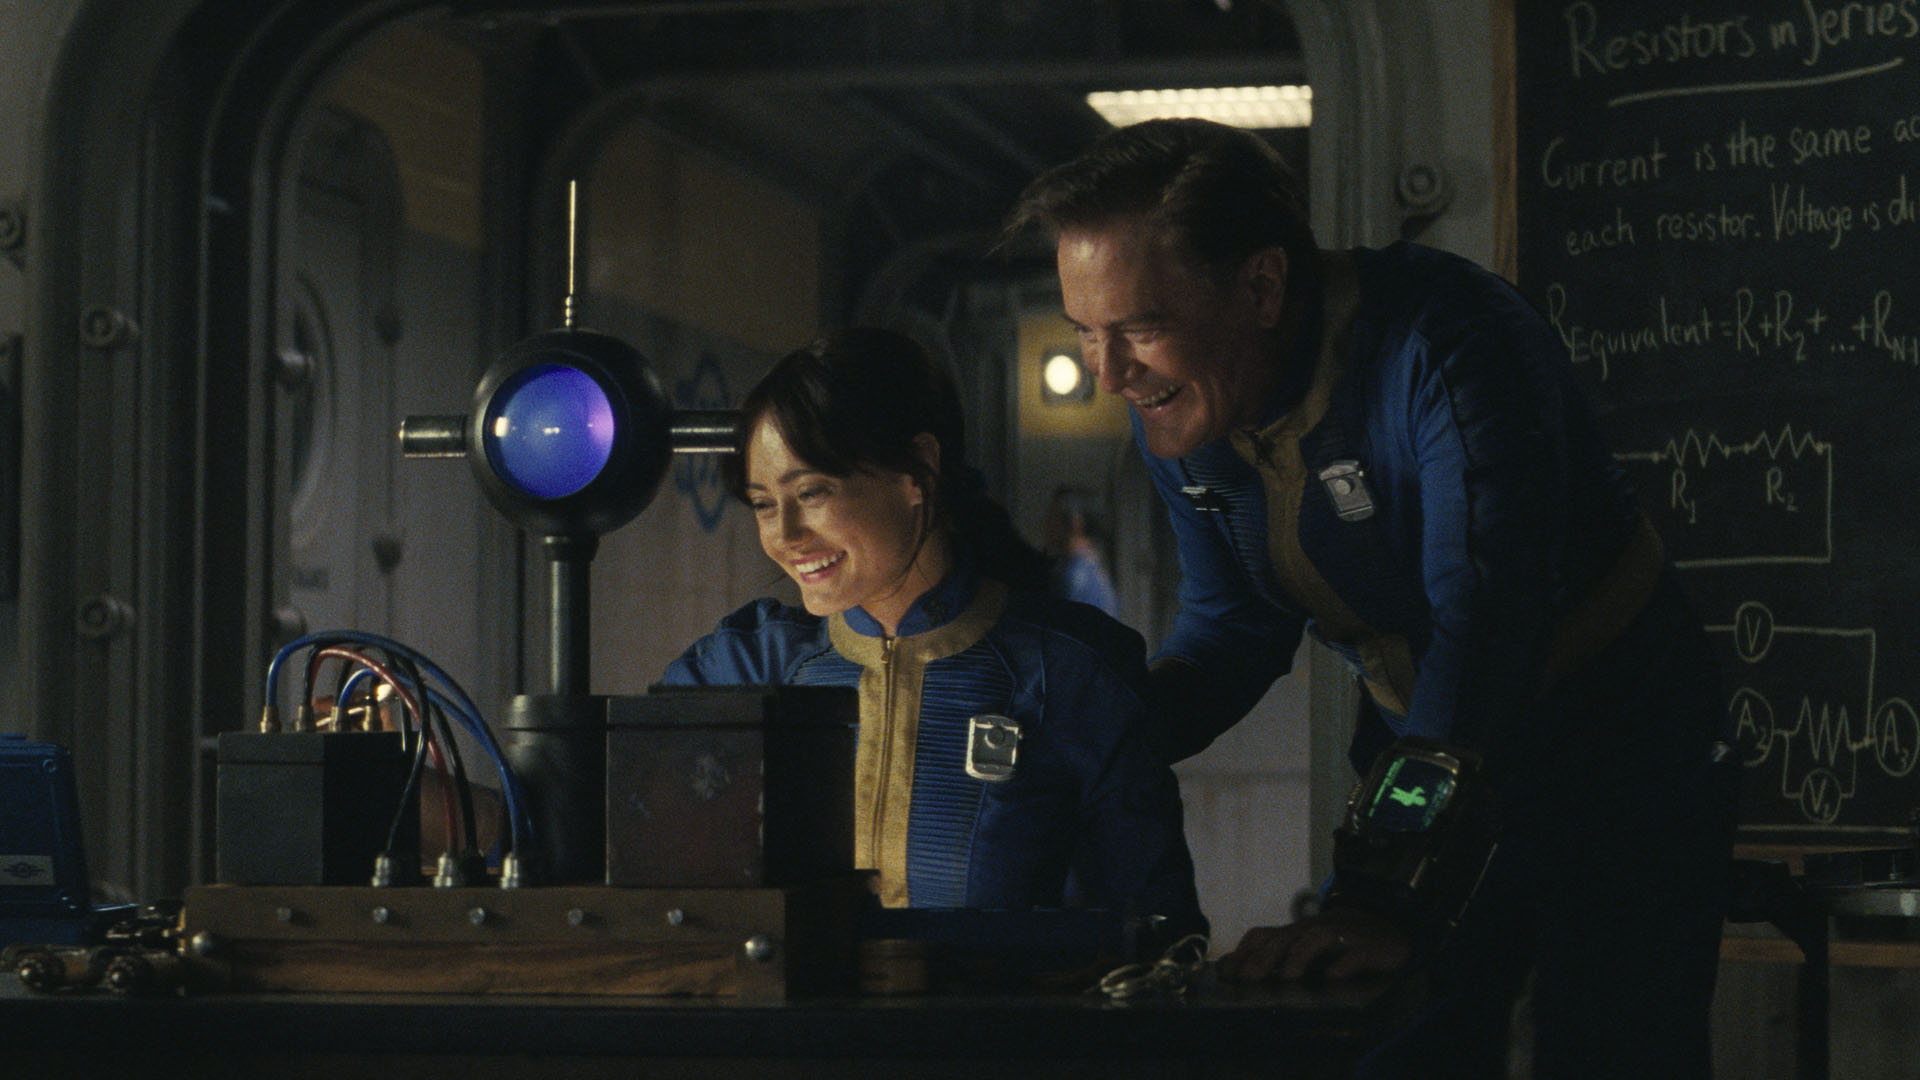 لوسی و هنک در حالی که در برنامه تلویزیونی Fallout به صفحه کامپیوتر نگاه می کنند، شوخی به اشتراک می گذارند